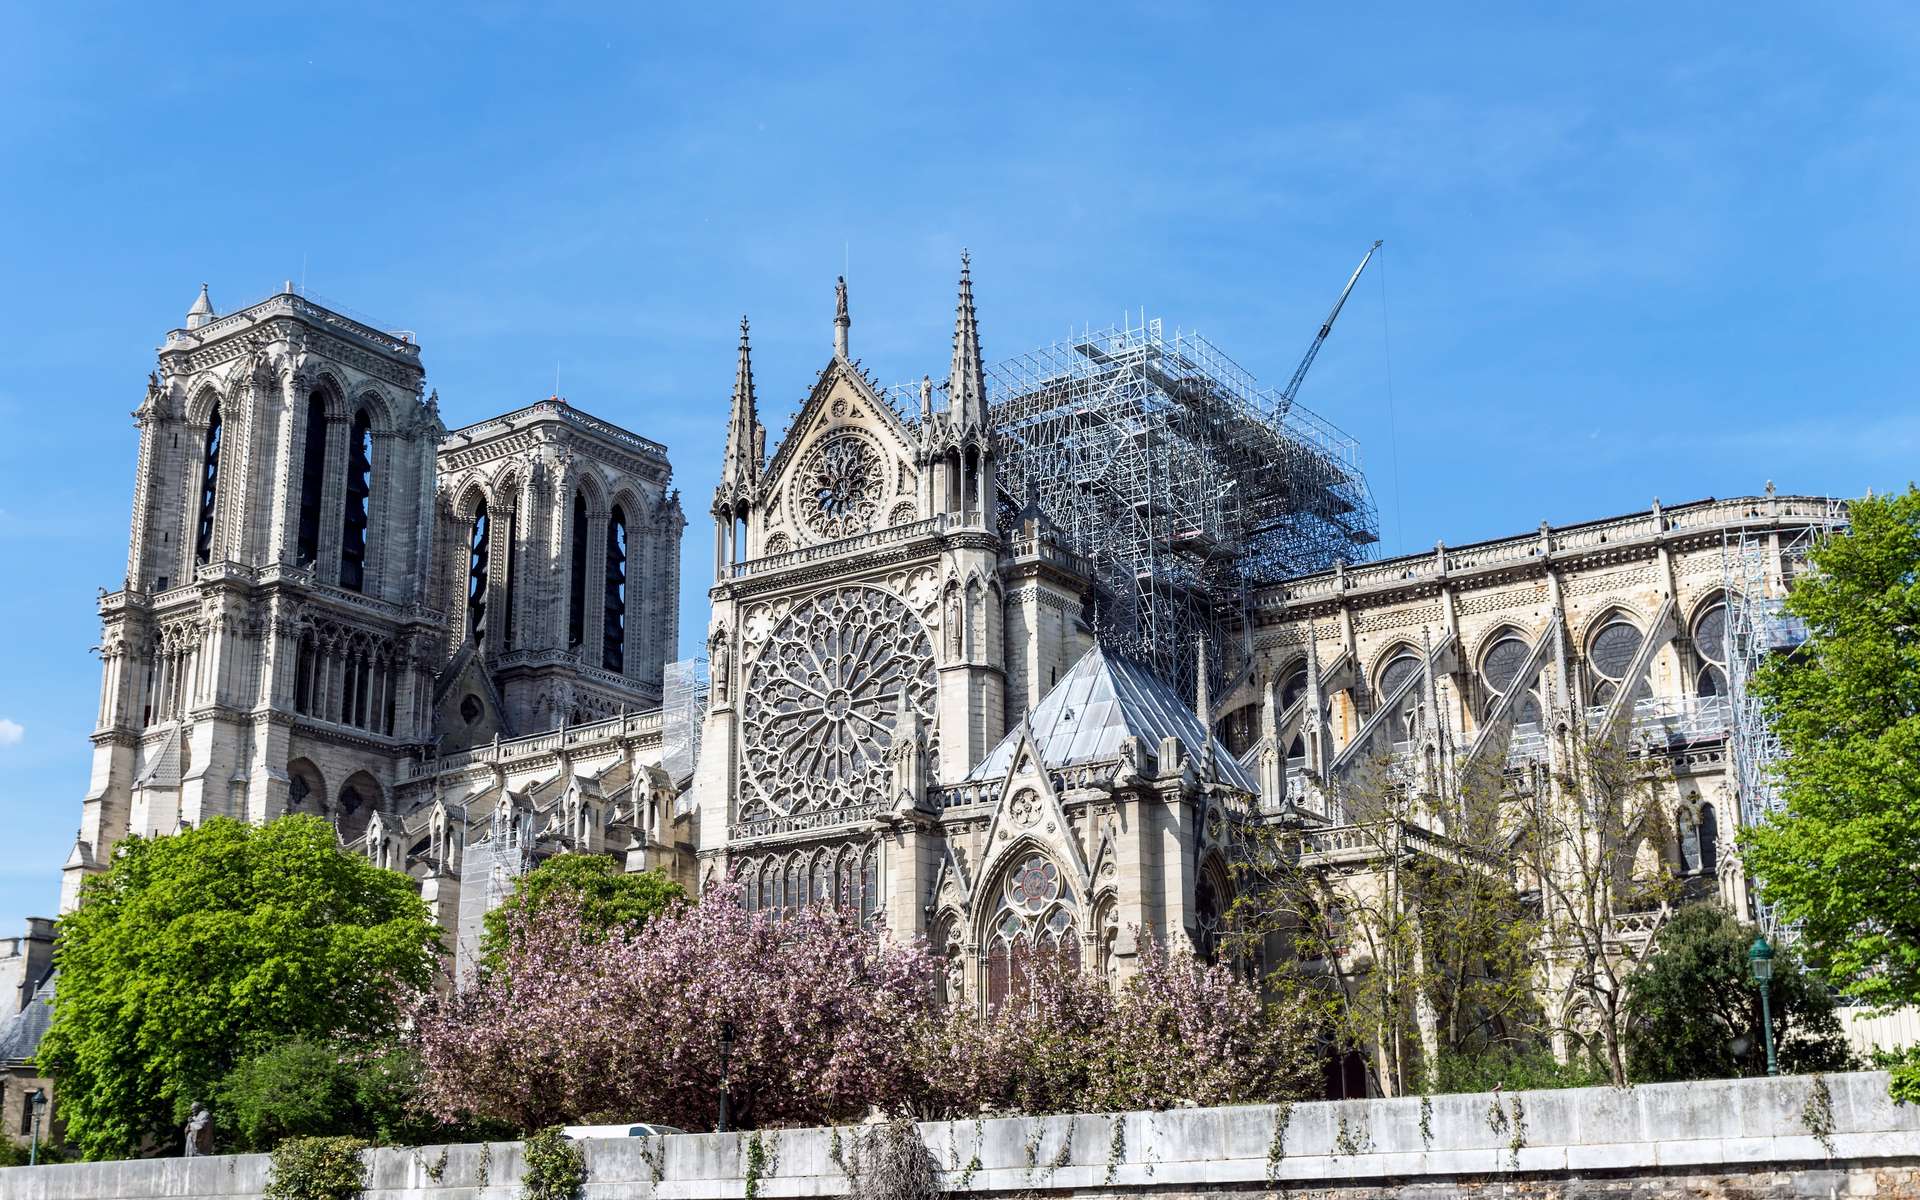 La cathédrale de Notre-Dame de Paris quelques jours après l'incendie de son toit et de la flèche. © UlyssePixel, Adobe Stock